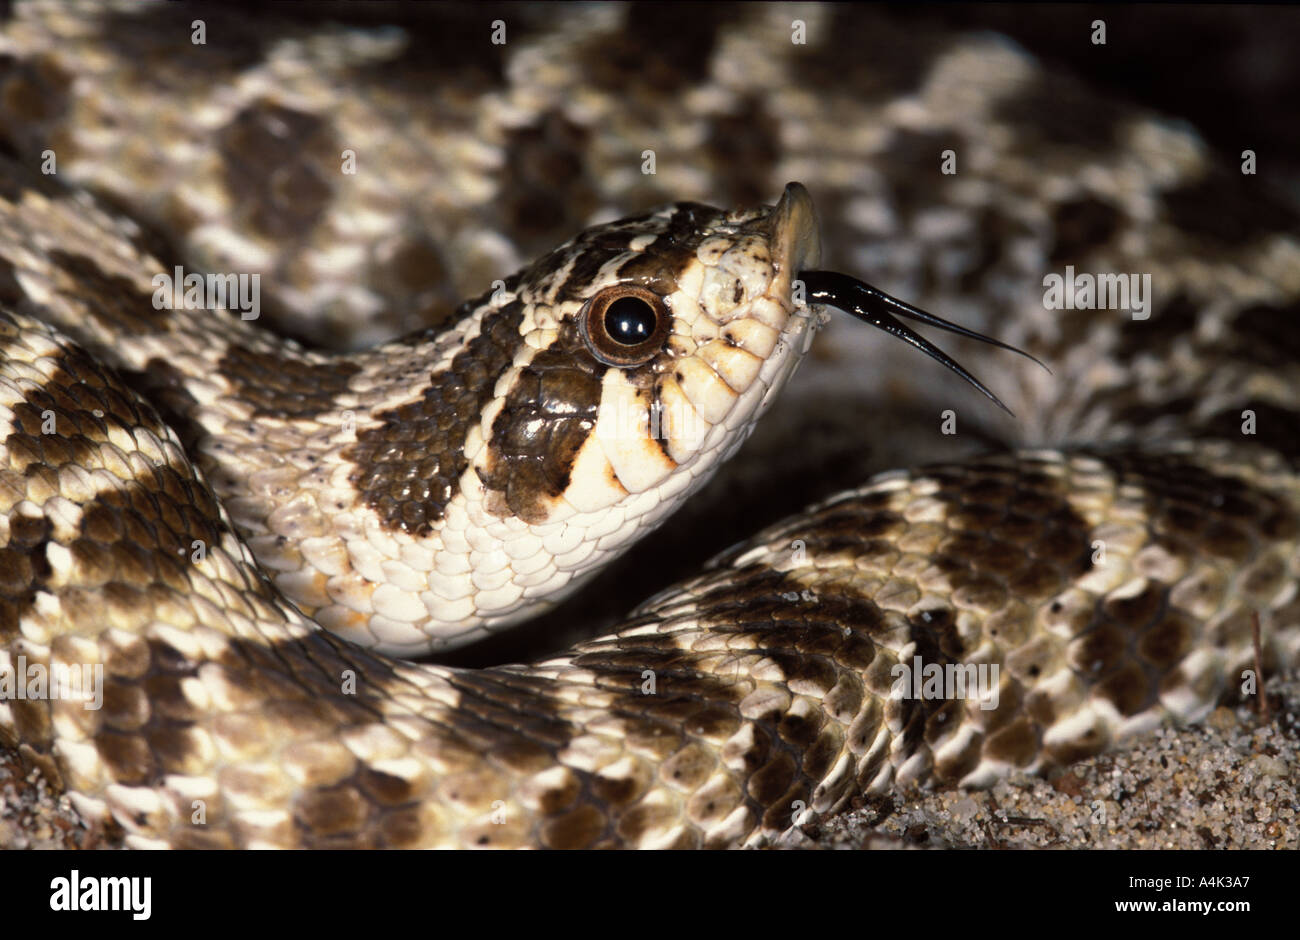 Western Hognose Snake Banque De Photographies Et D Images A Haute Resolution Alamy